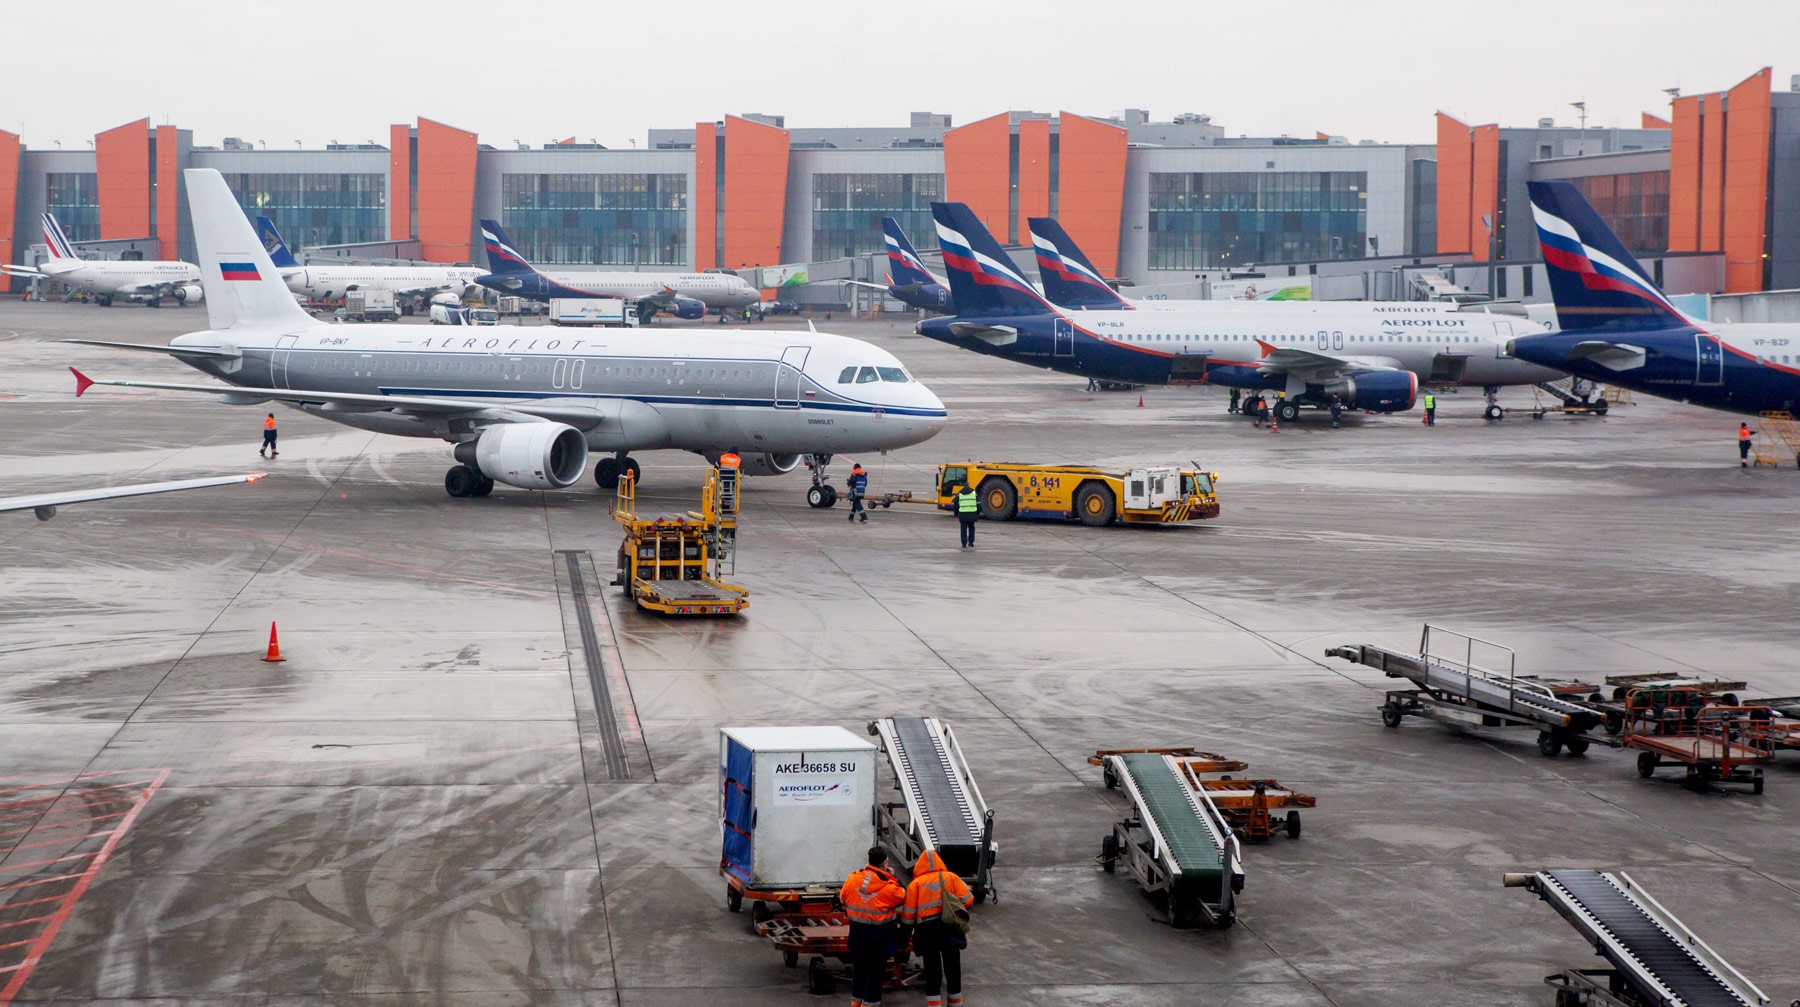 Dailystorm - Бездоходный полет: российские авиакомпании показали миллиардные убытки